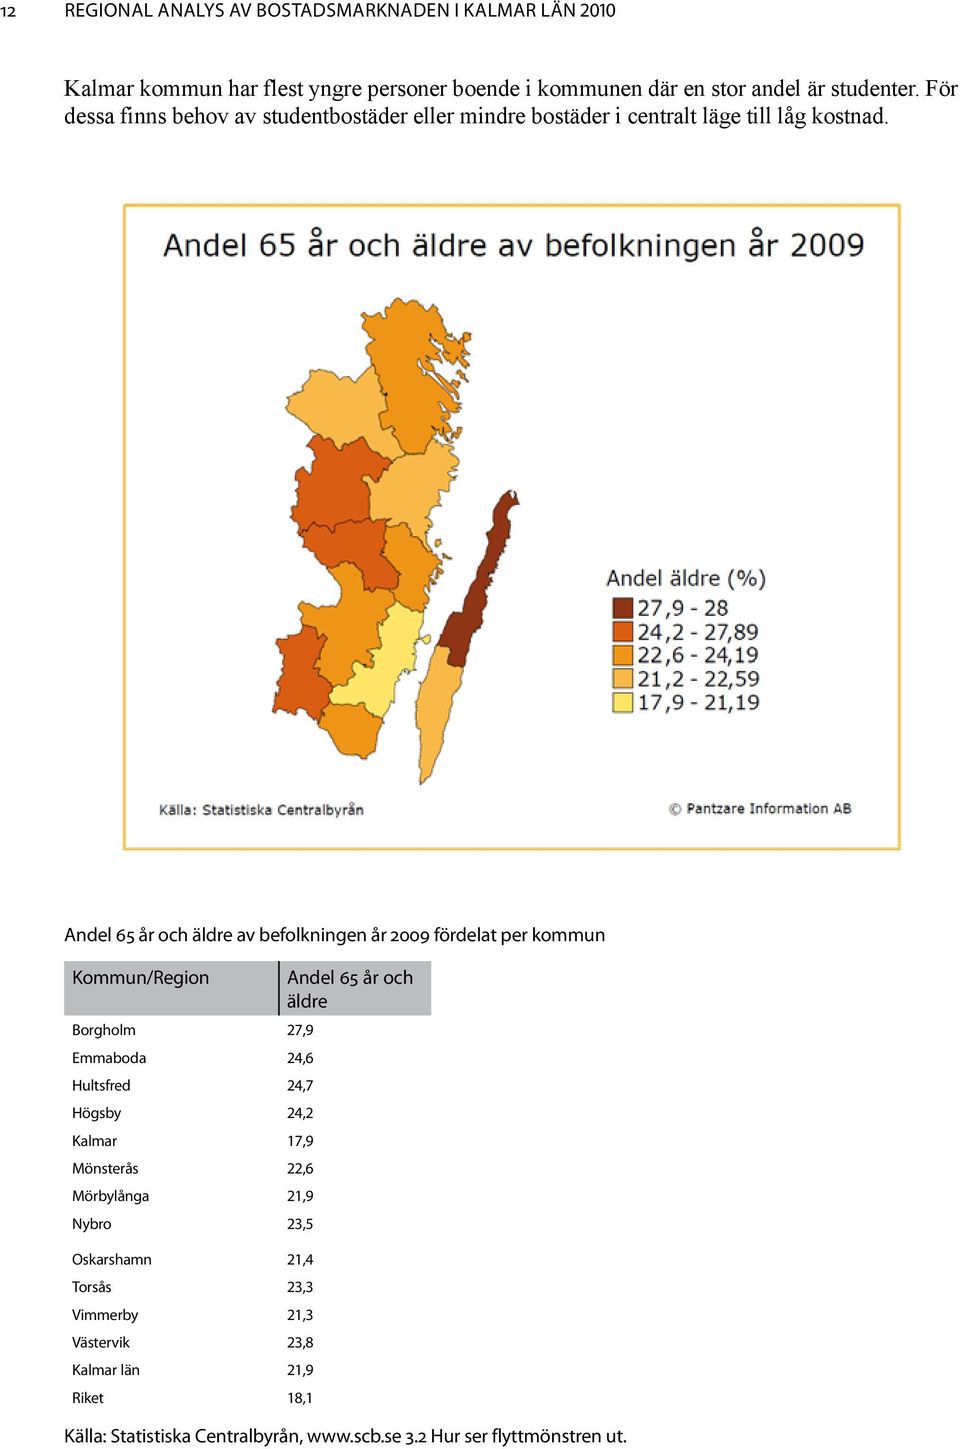 Andel 65 år och äldre av befolkningen år 2009 fördelat per kommun Kommun/Region Andel 65 år och äldre Borgholm 27,9 Emmaboda 24,6 Hultsfred 24,7 Högsby